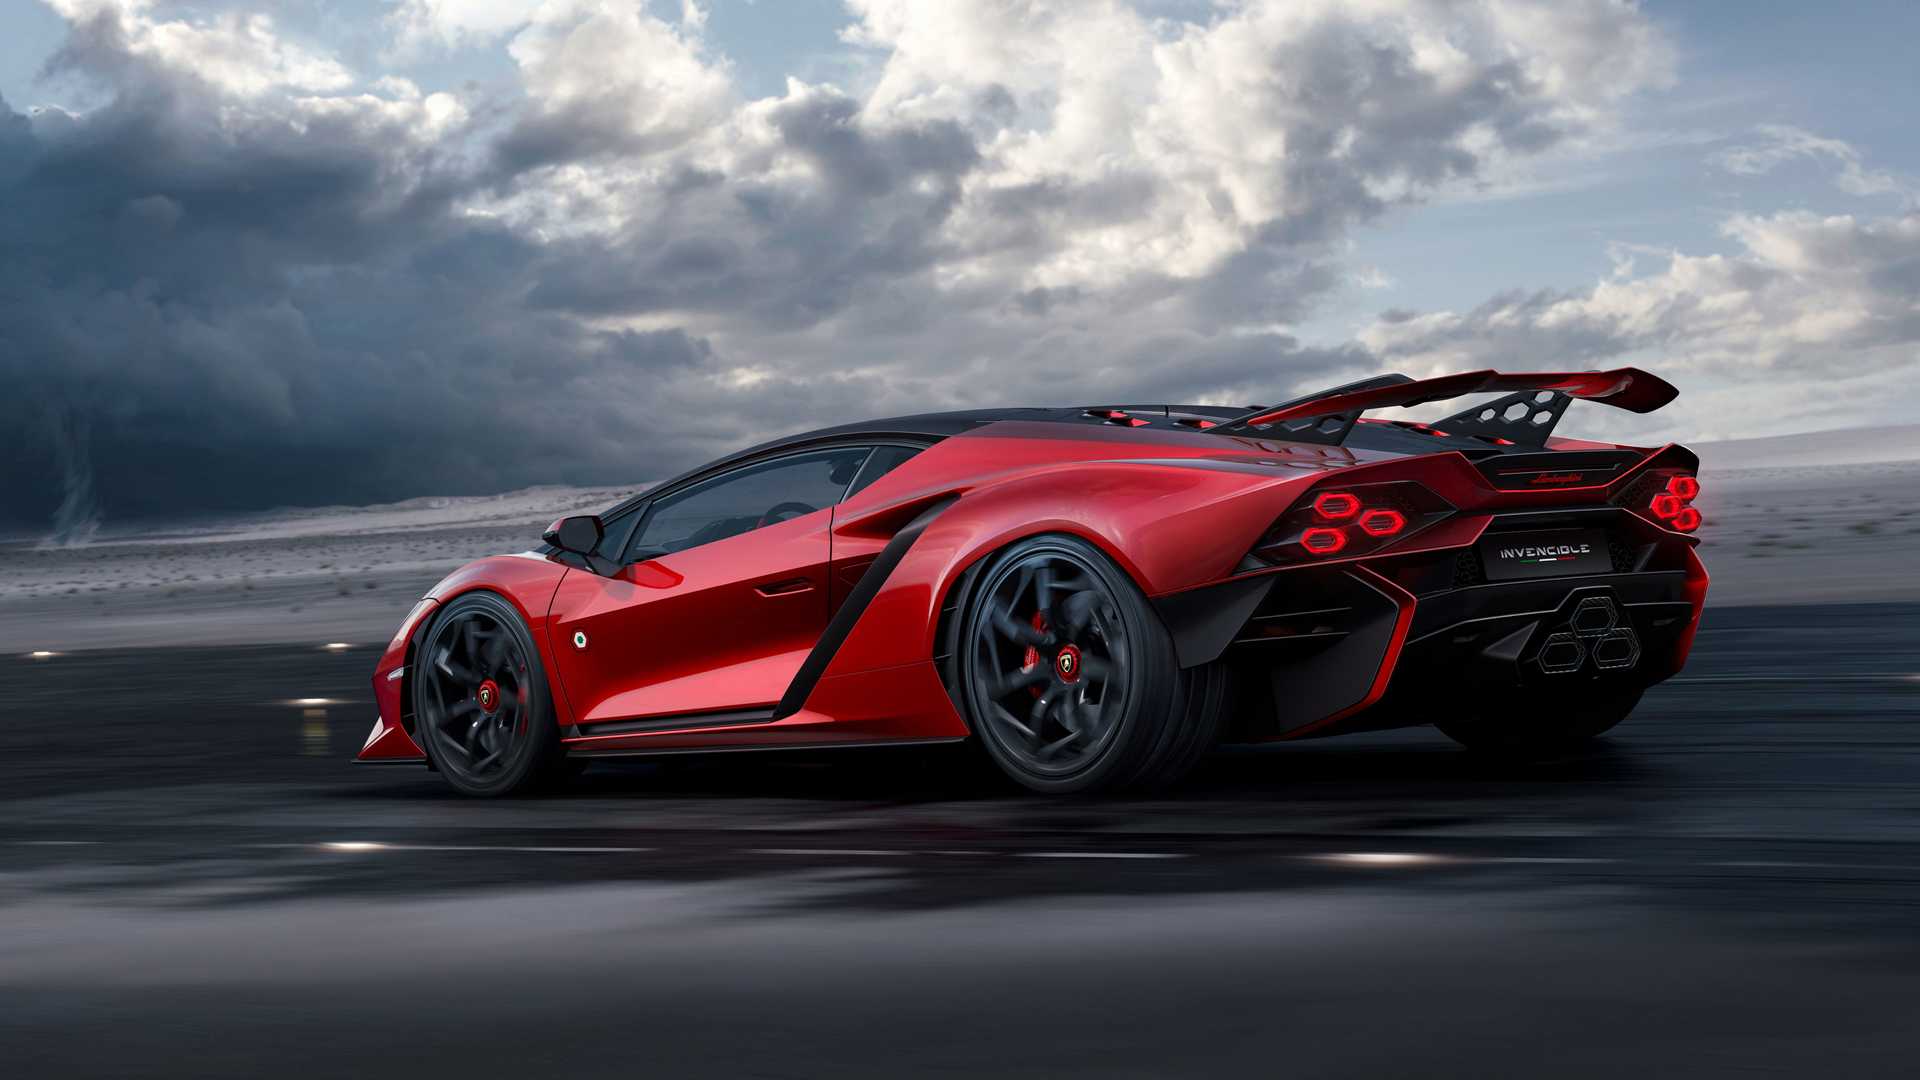 Lamborghini ra mắt bộ đôi siêu xe V12 chạy xăng cuối cùng, sau đây sẽ toàn siêu xe điện êm ru chưa biết nẹt pô kiểu gì - Ảnh 6.